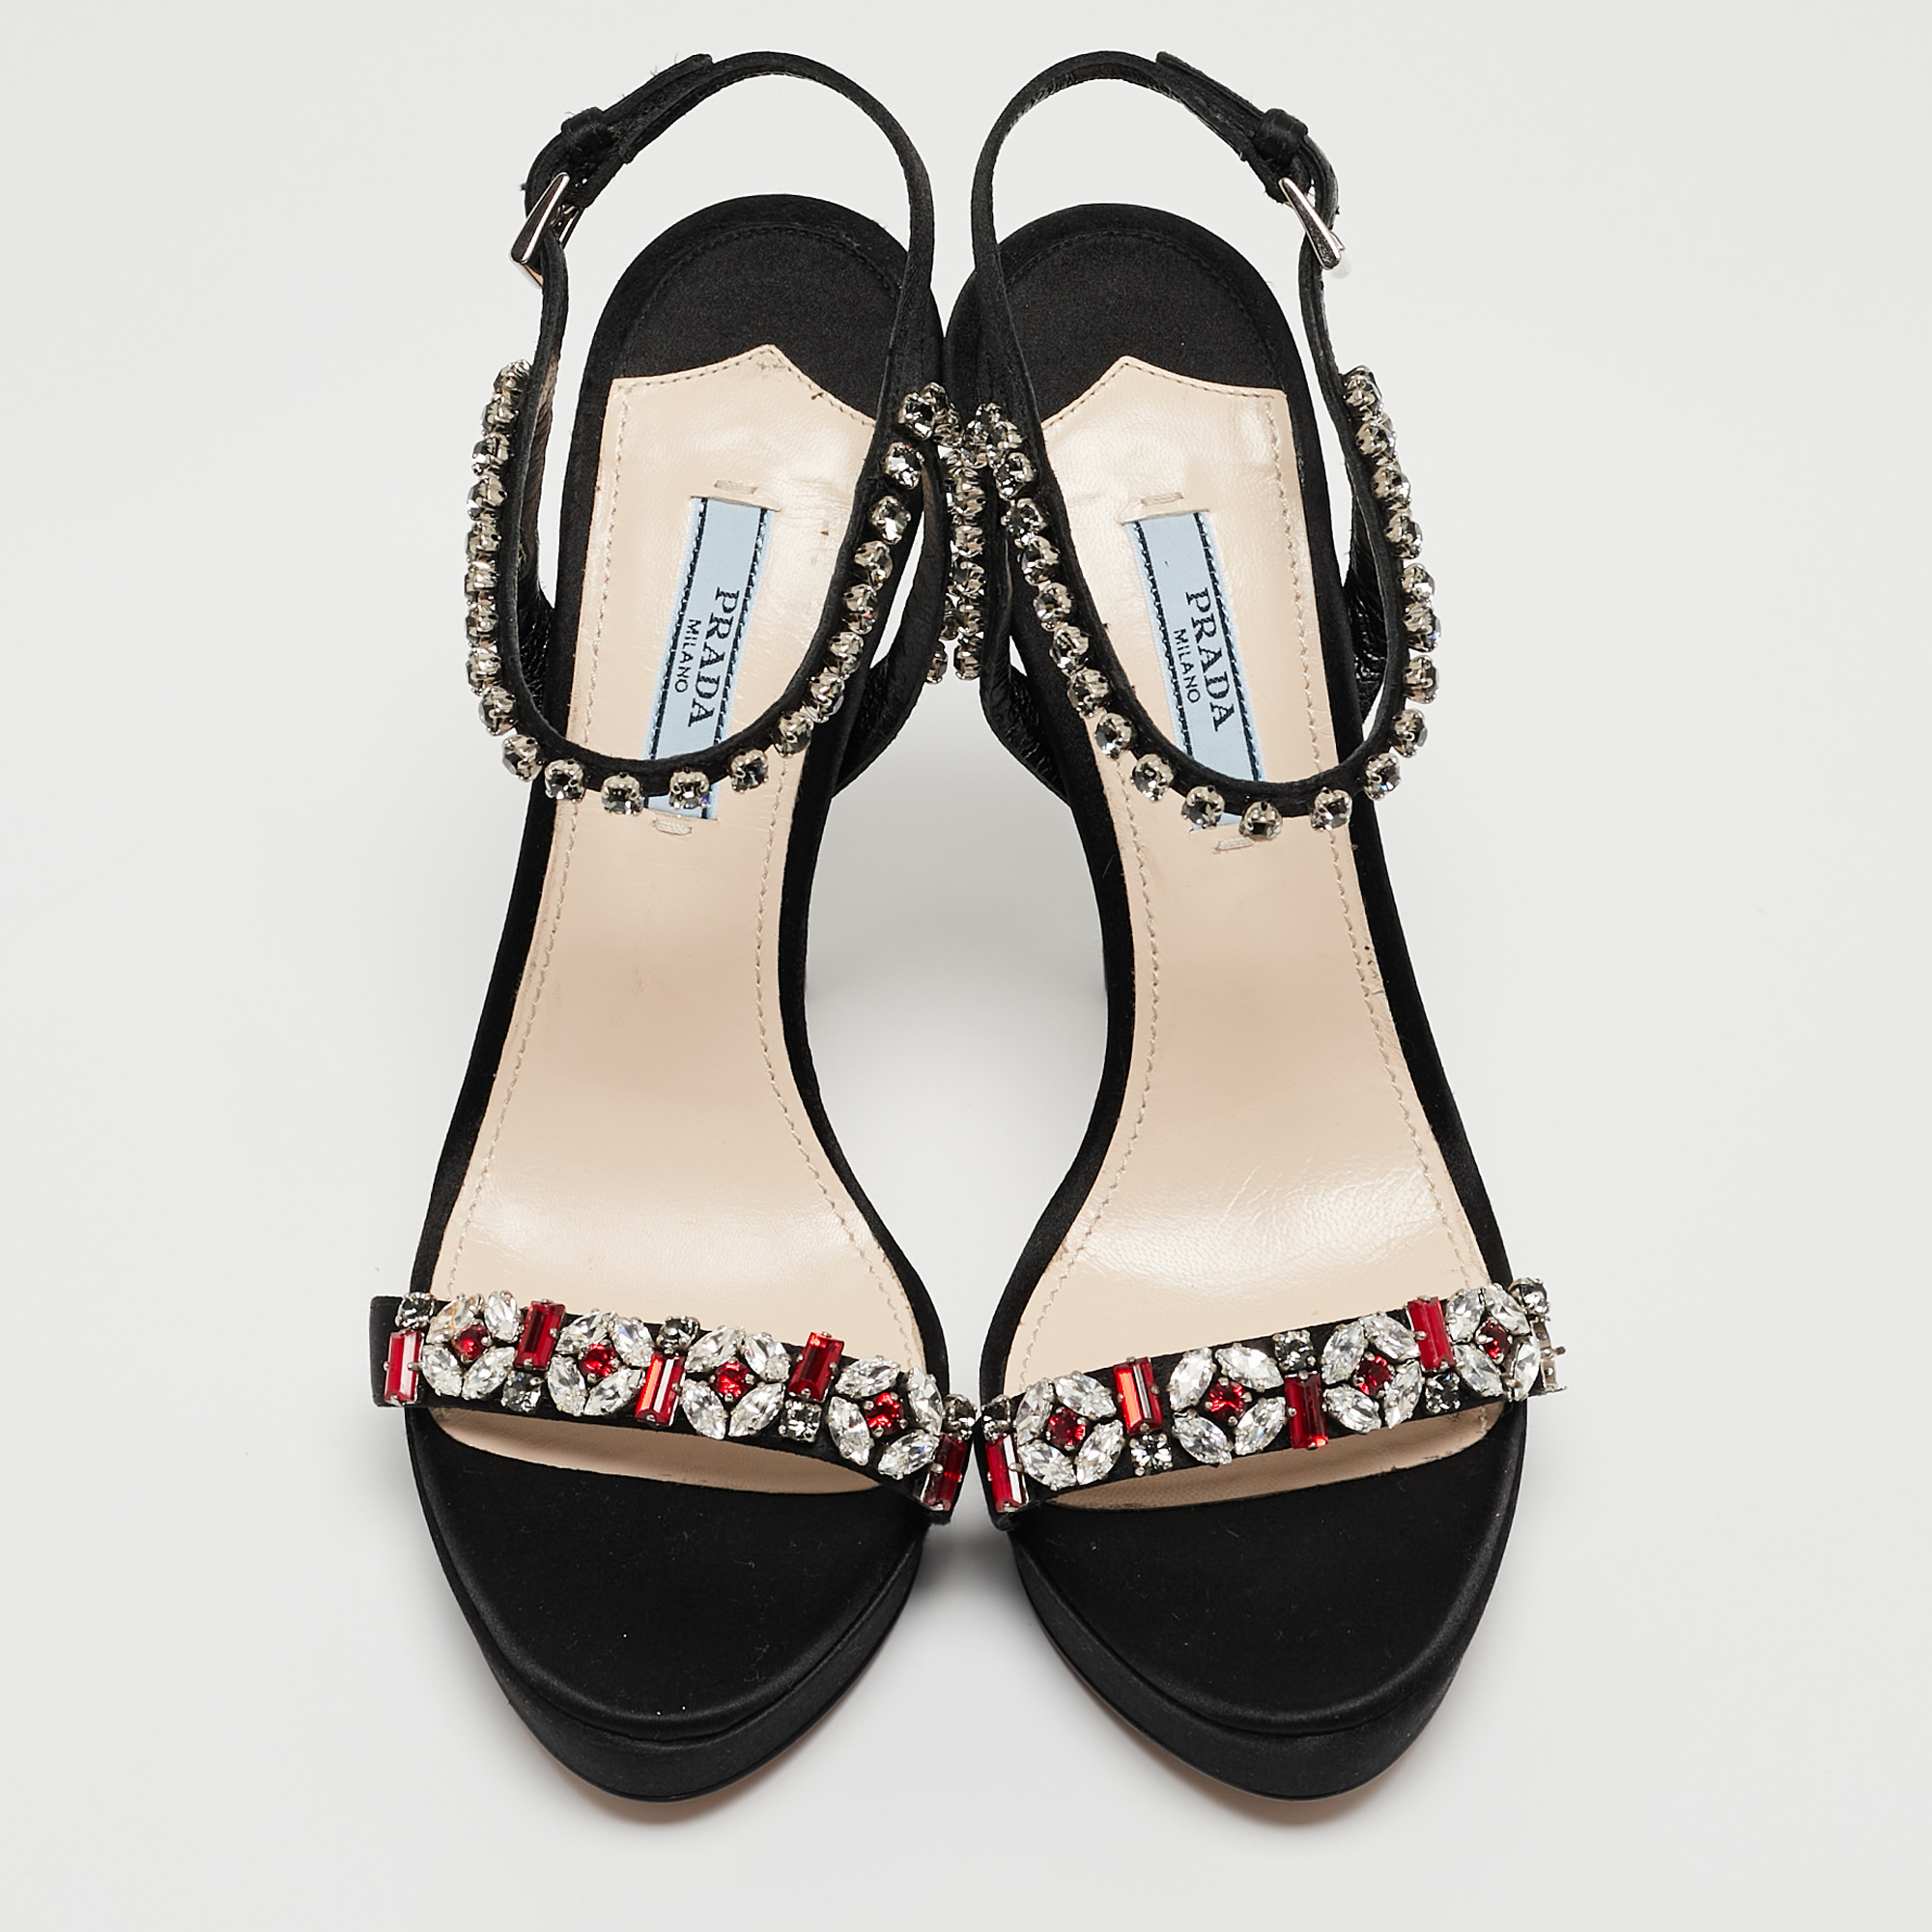 Prada Black Satin Crystal Embellished Ankle Strap Sandals Size 37